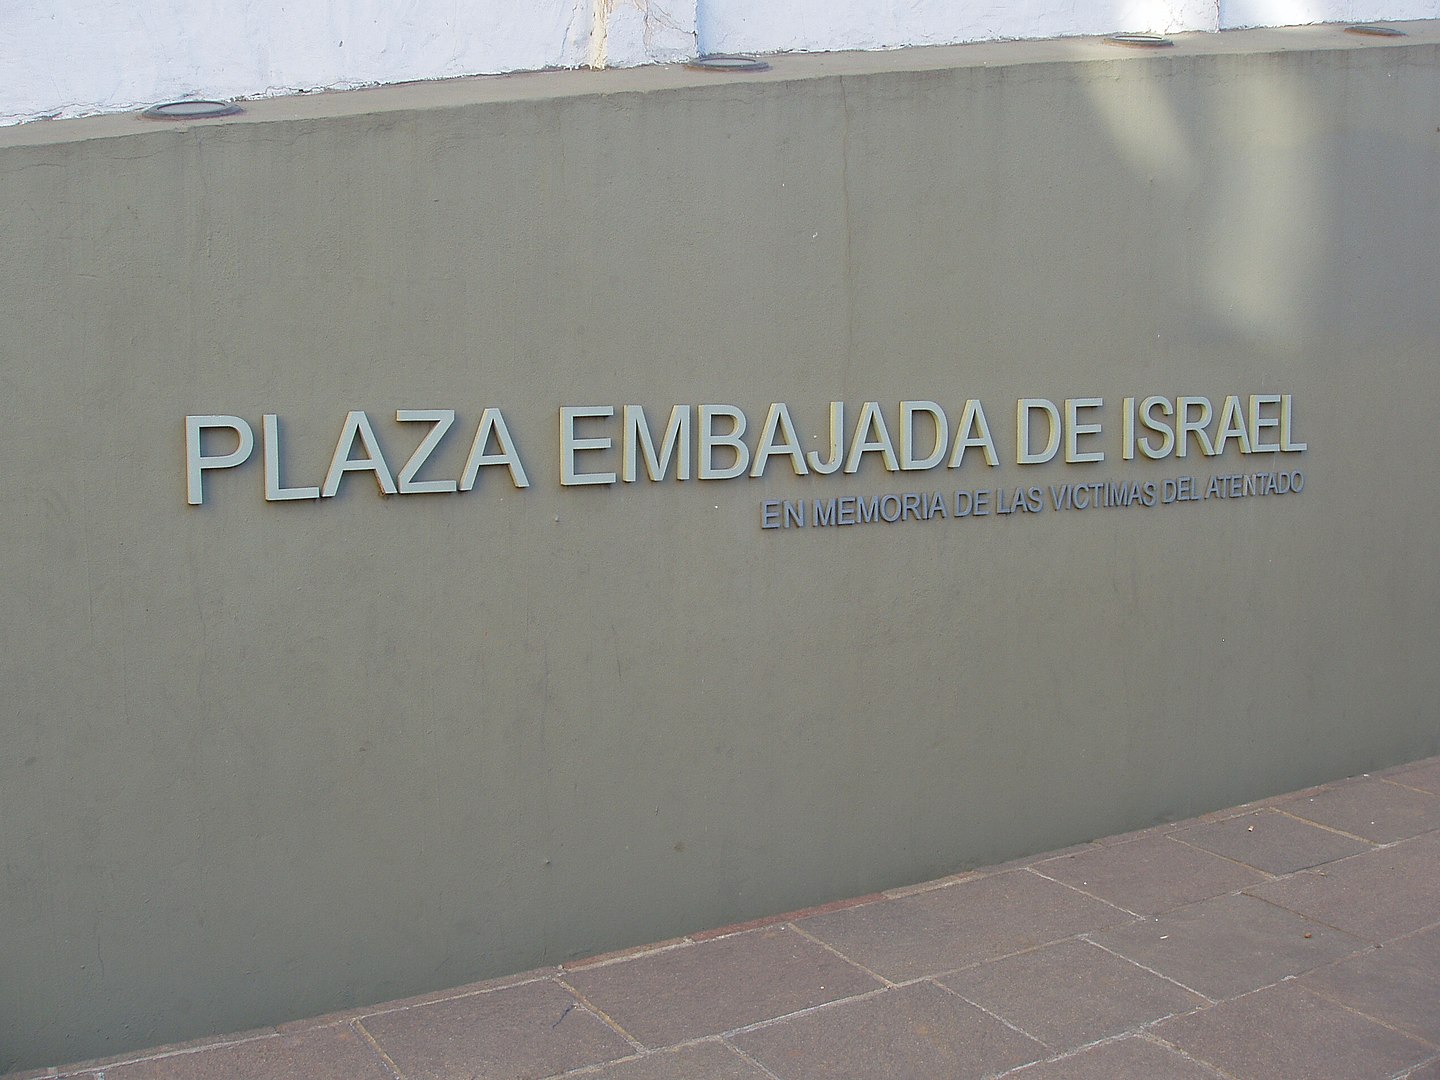 17 de abril de 1992 Se producía el atentado a la Embajada de Israel en Buenos Aires